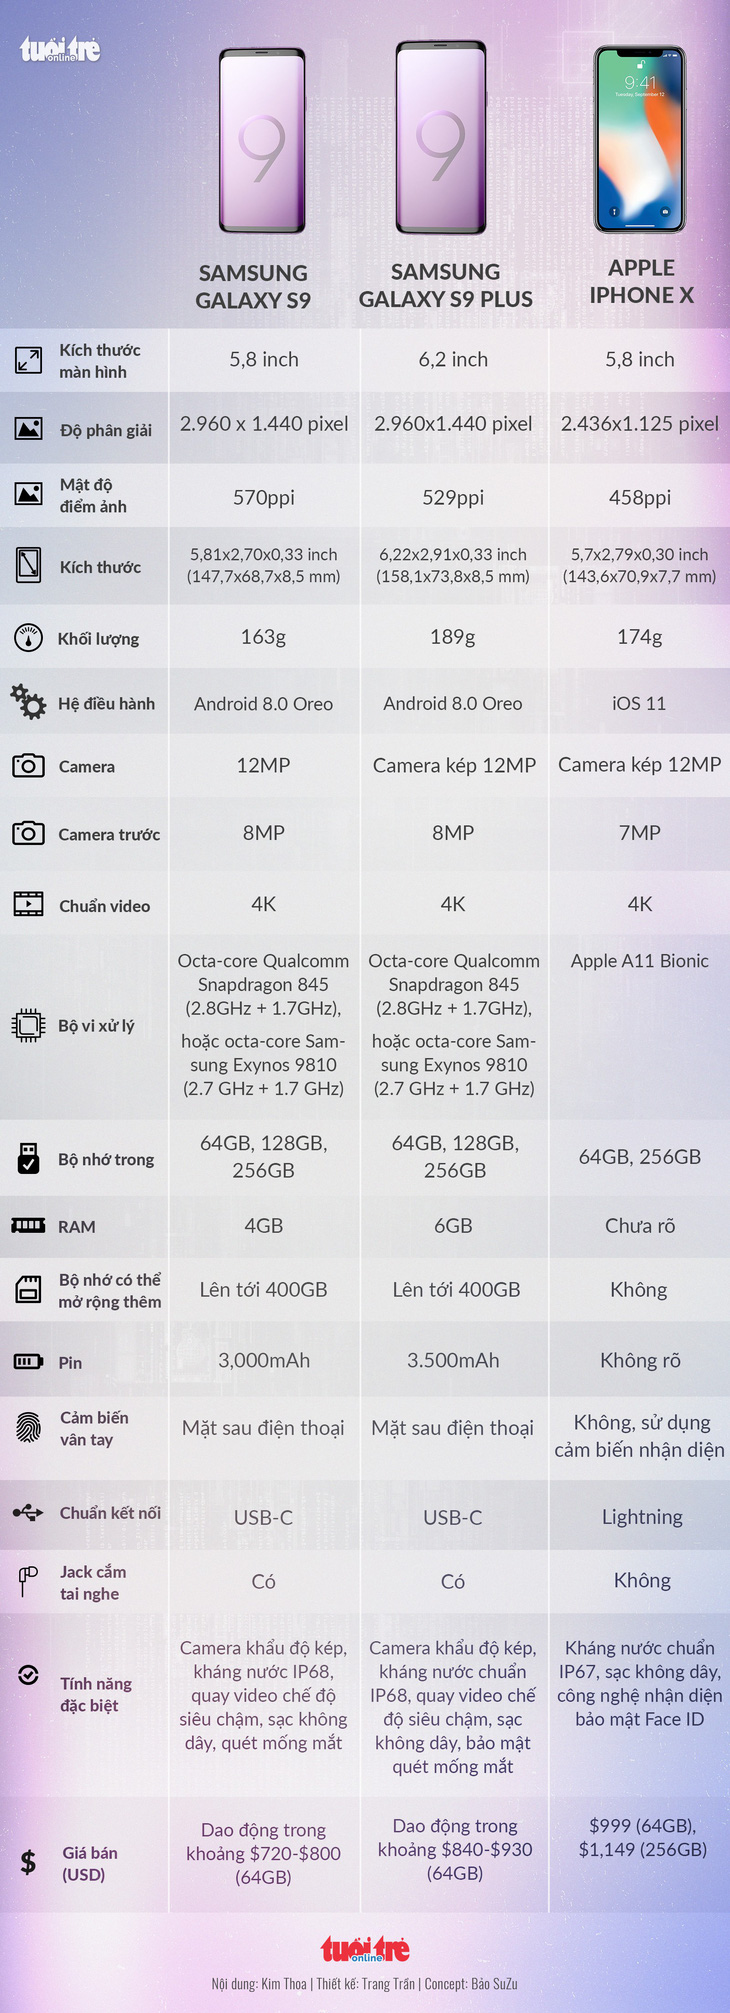 S9 và S9+ có gì trội hơn những điện thoại khác? - Ảnh 3.